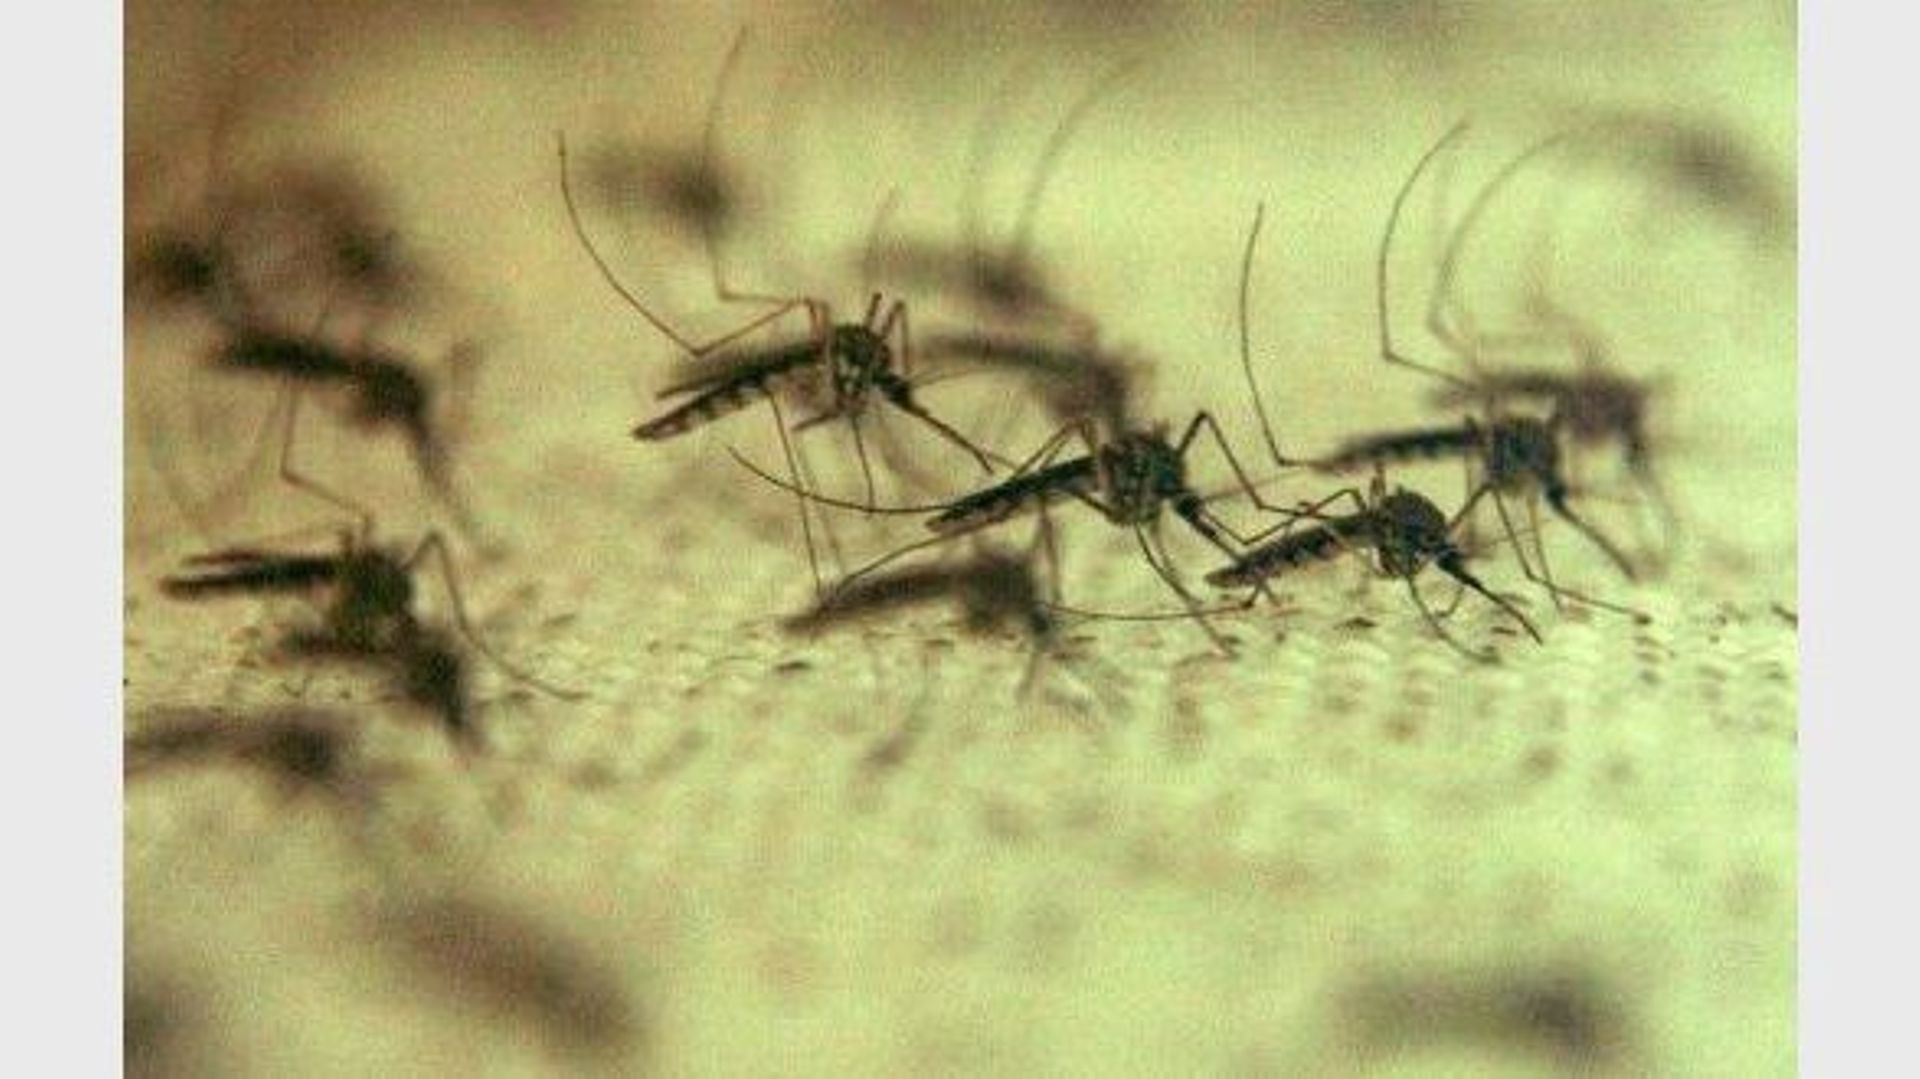 Des moustiques dans un laboratoire de recherche